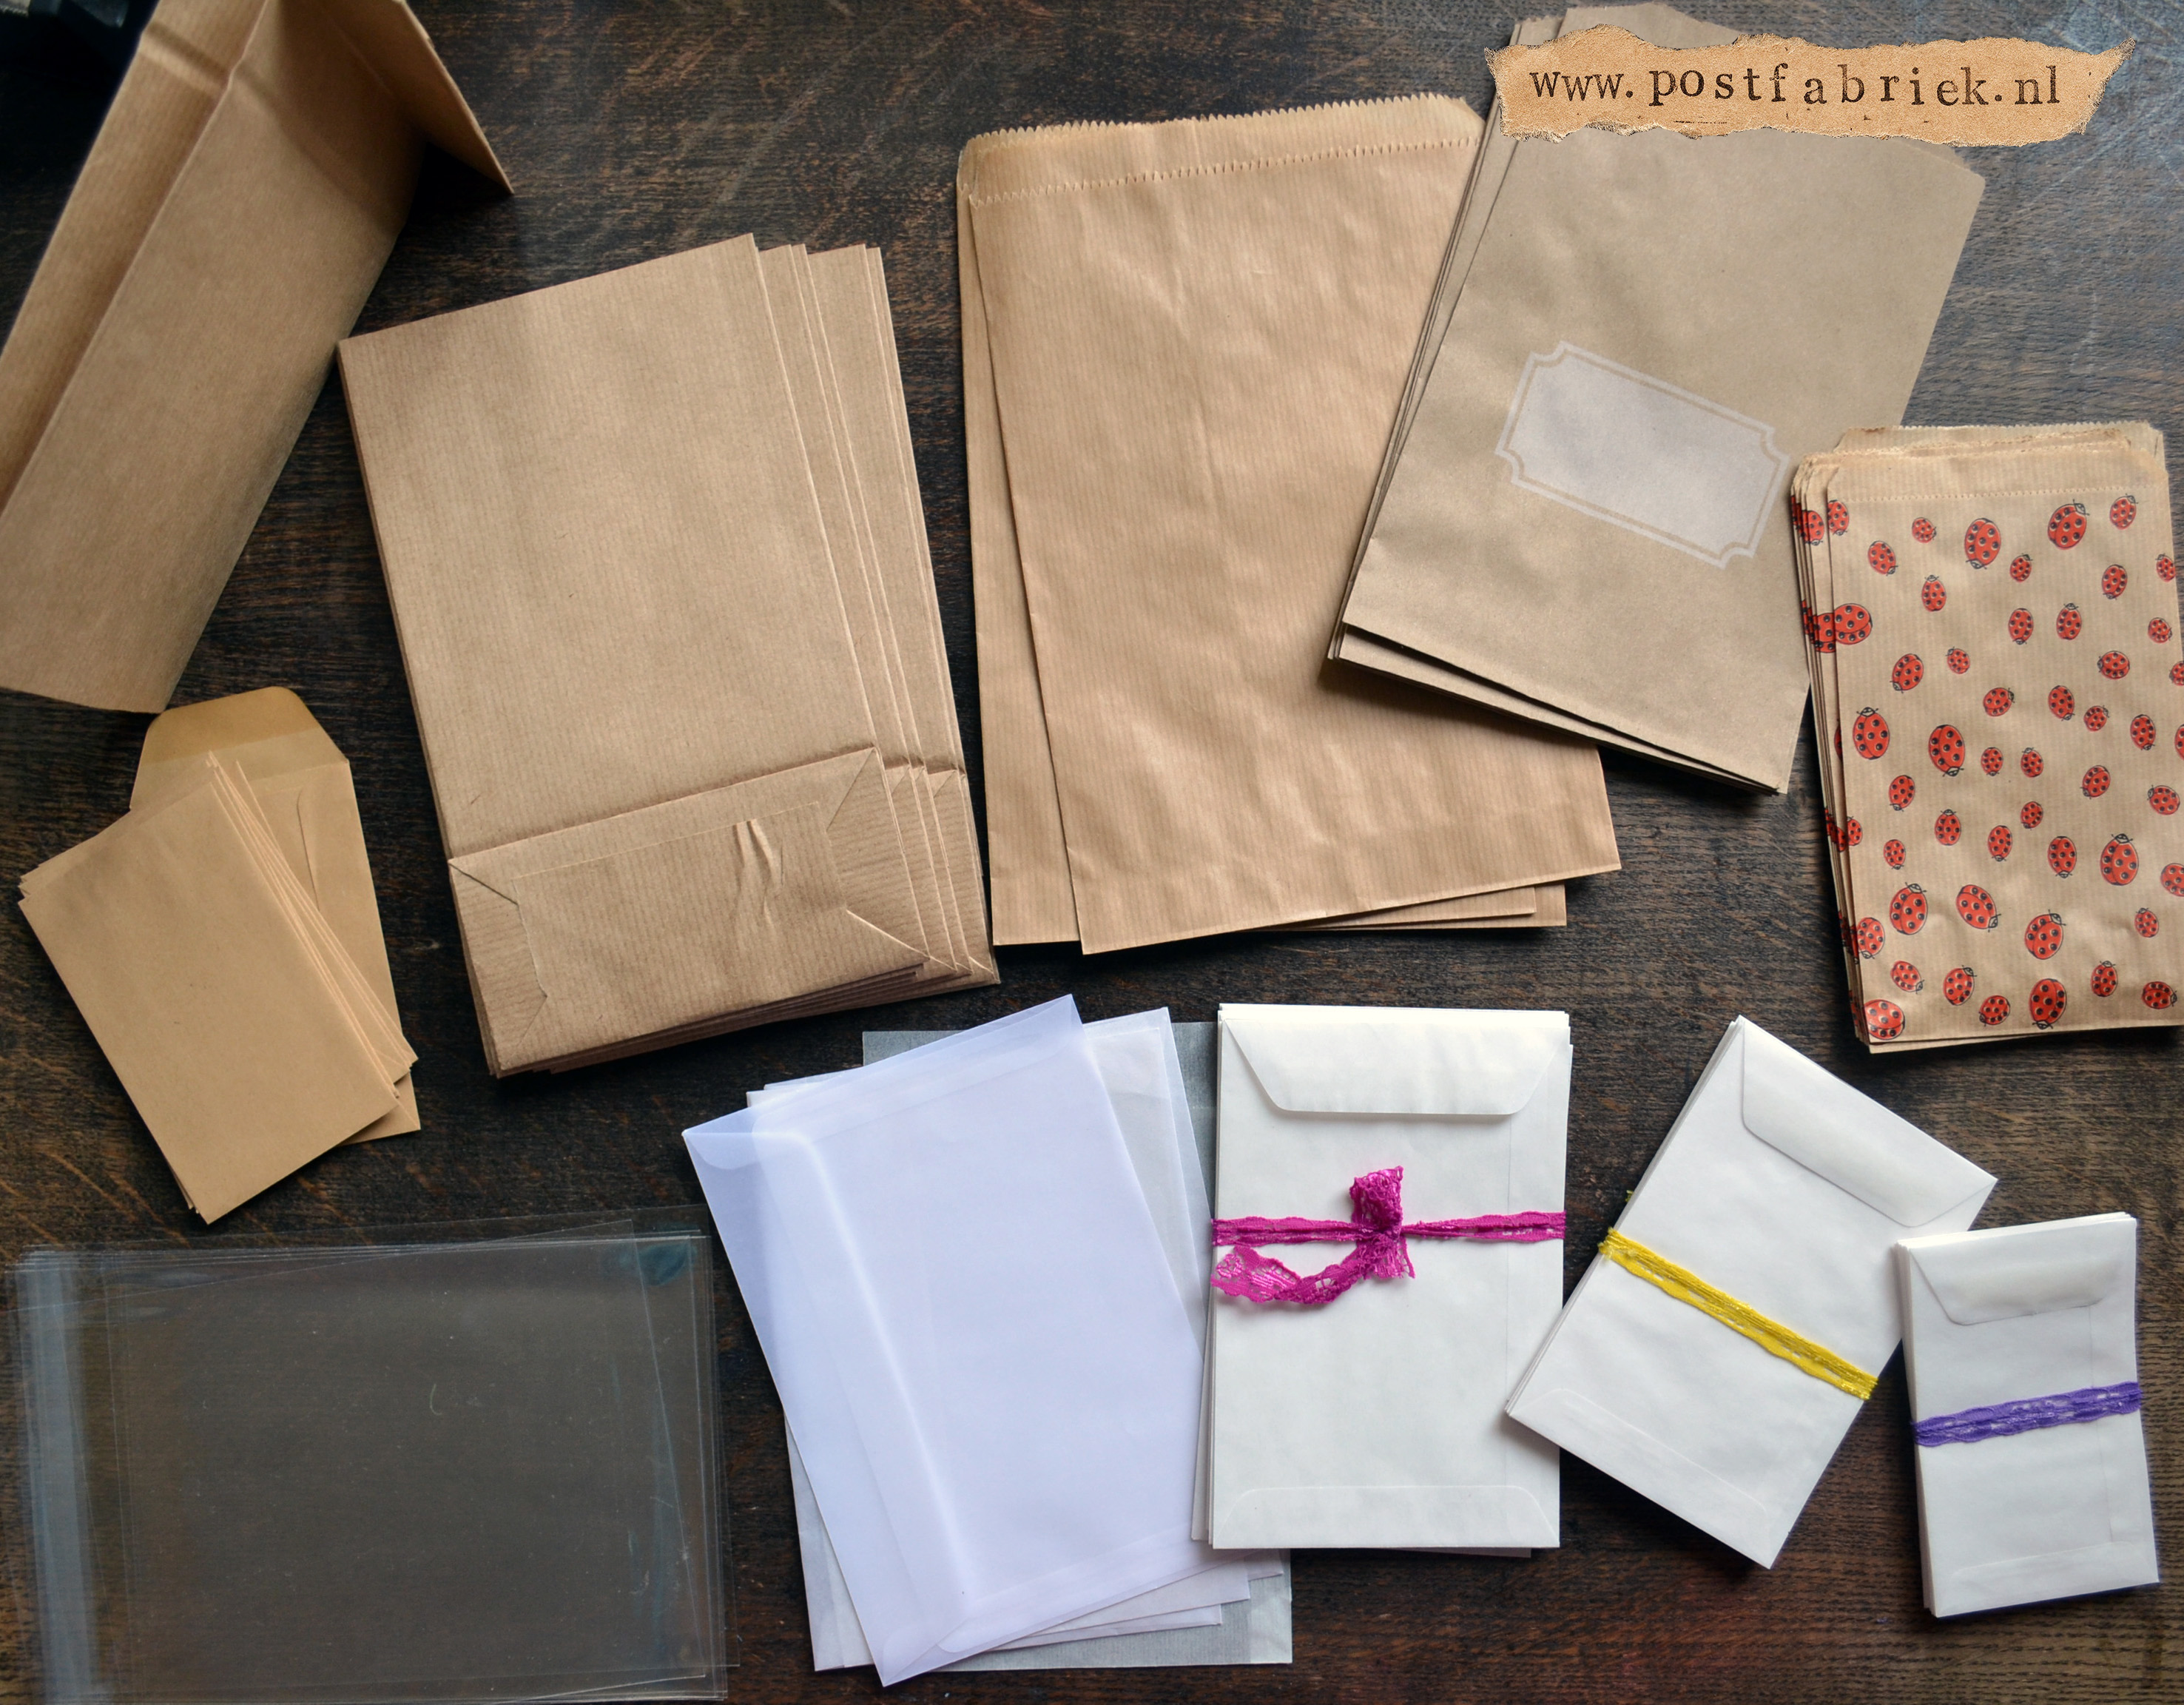 verliezen Geschiktheid Incident, evenement Dol op papieren zakjes! - Postfabriek